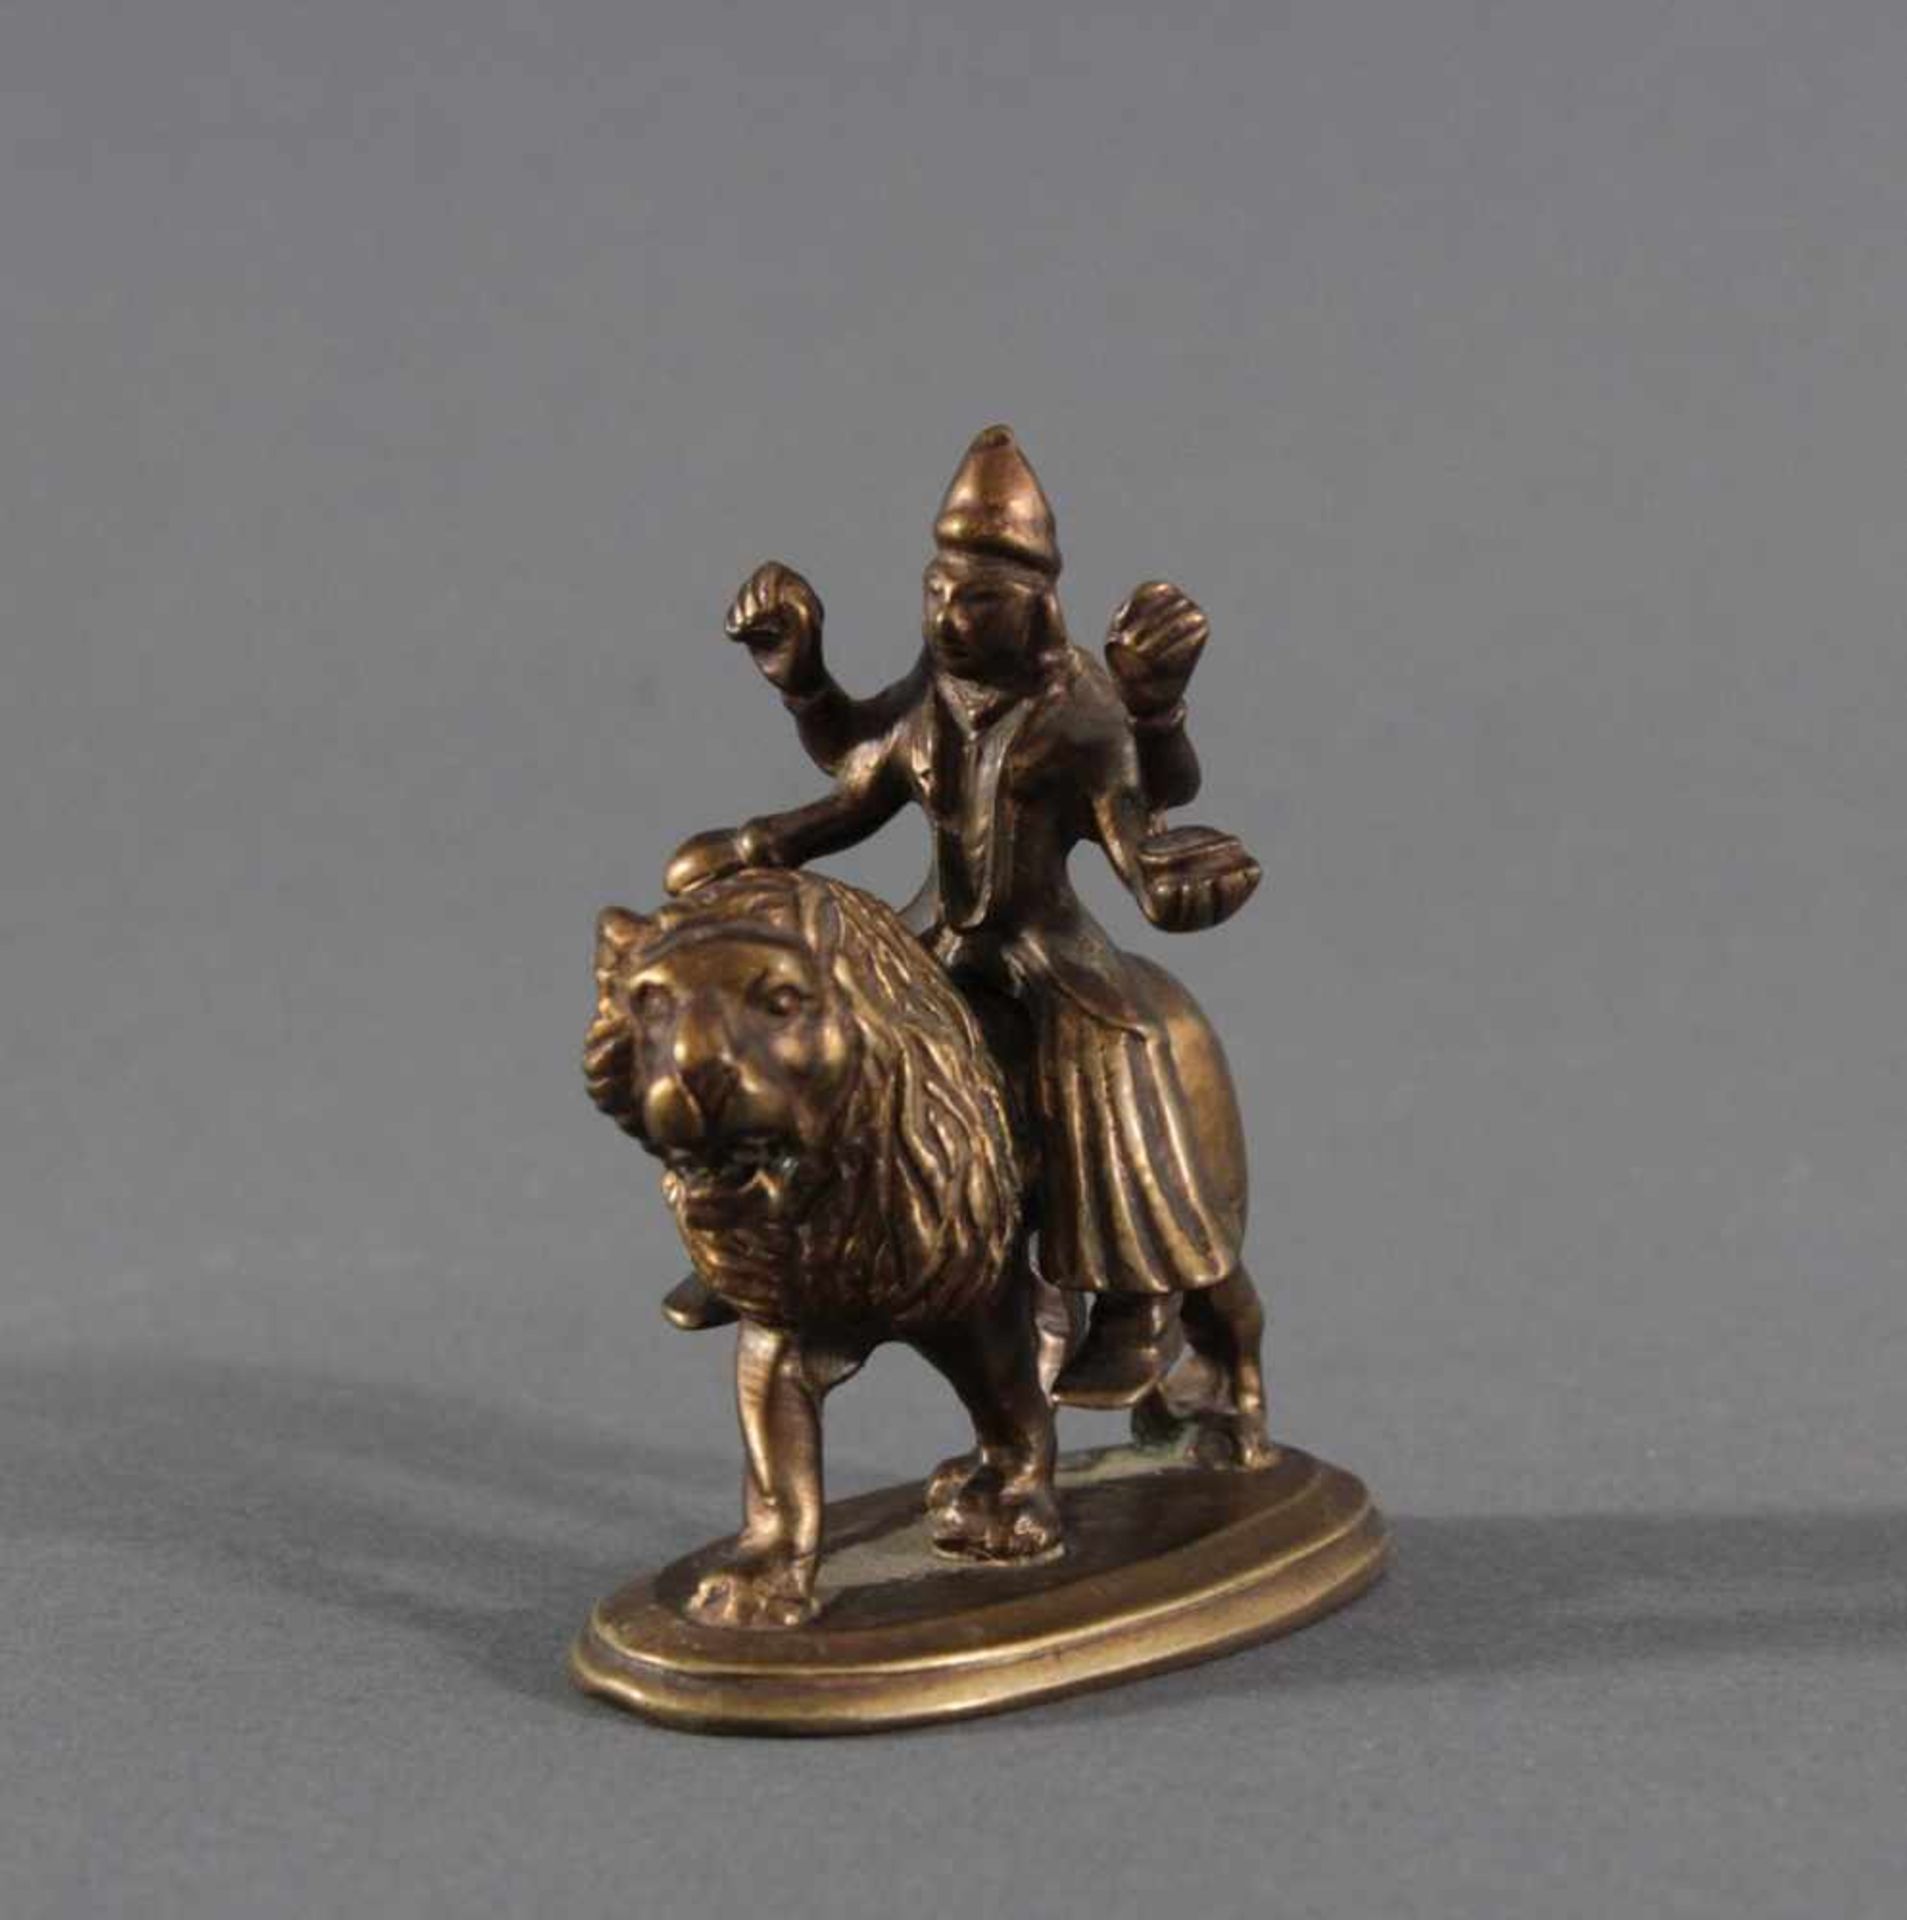 Bronzefigur, "Durga", um 1900Vierarmige Durga auf einem Löwen. In den Händen verschiedene Atribute